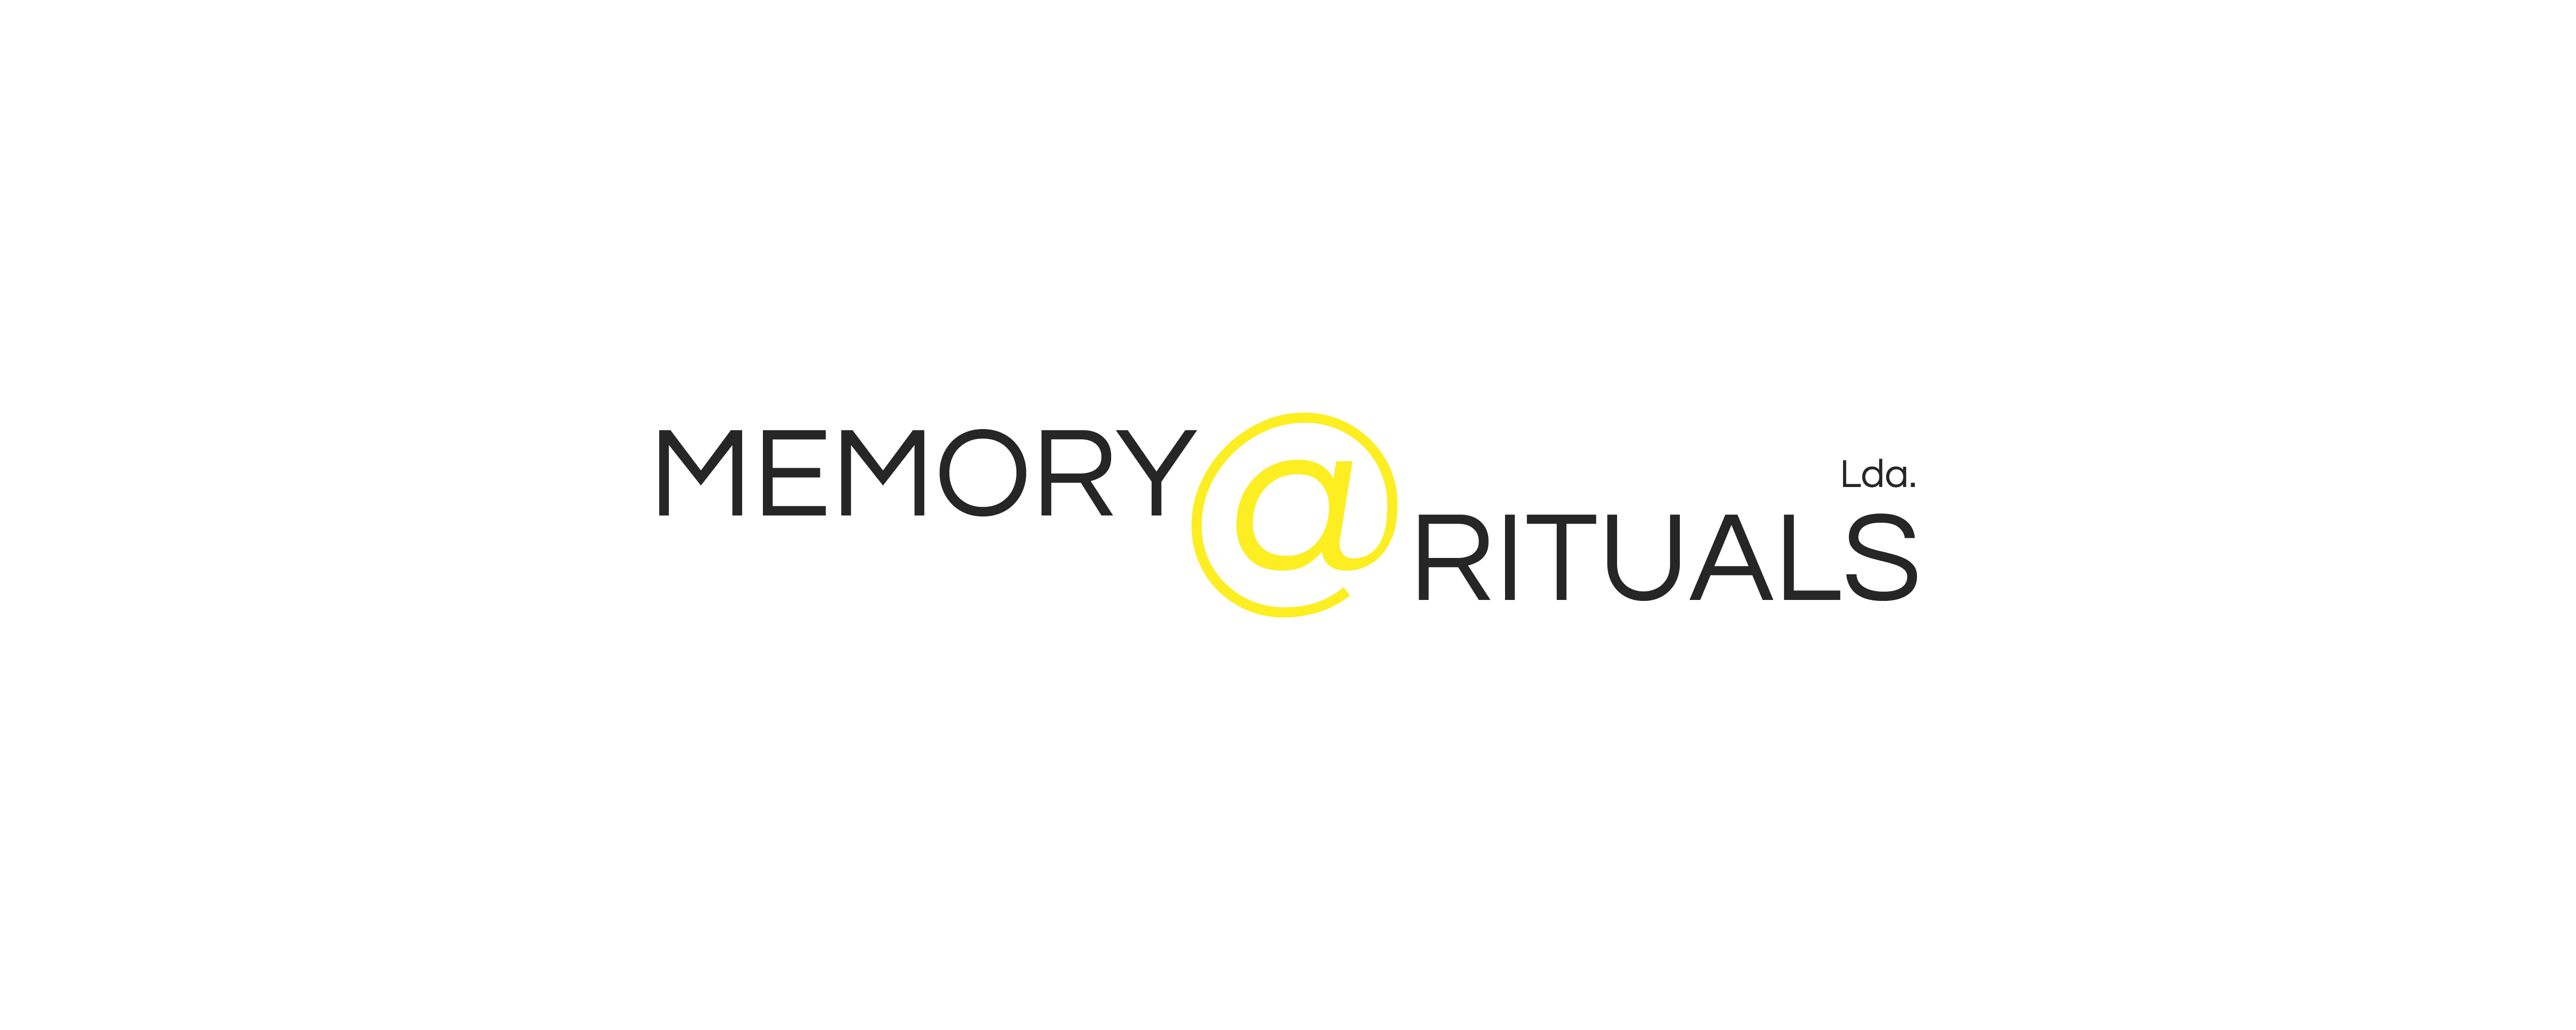 MEMORY_RITUALS_LOGO_FINAL-02